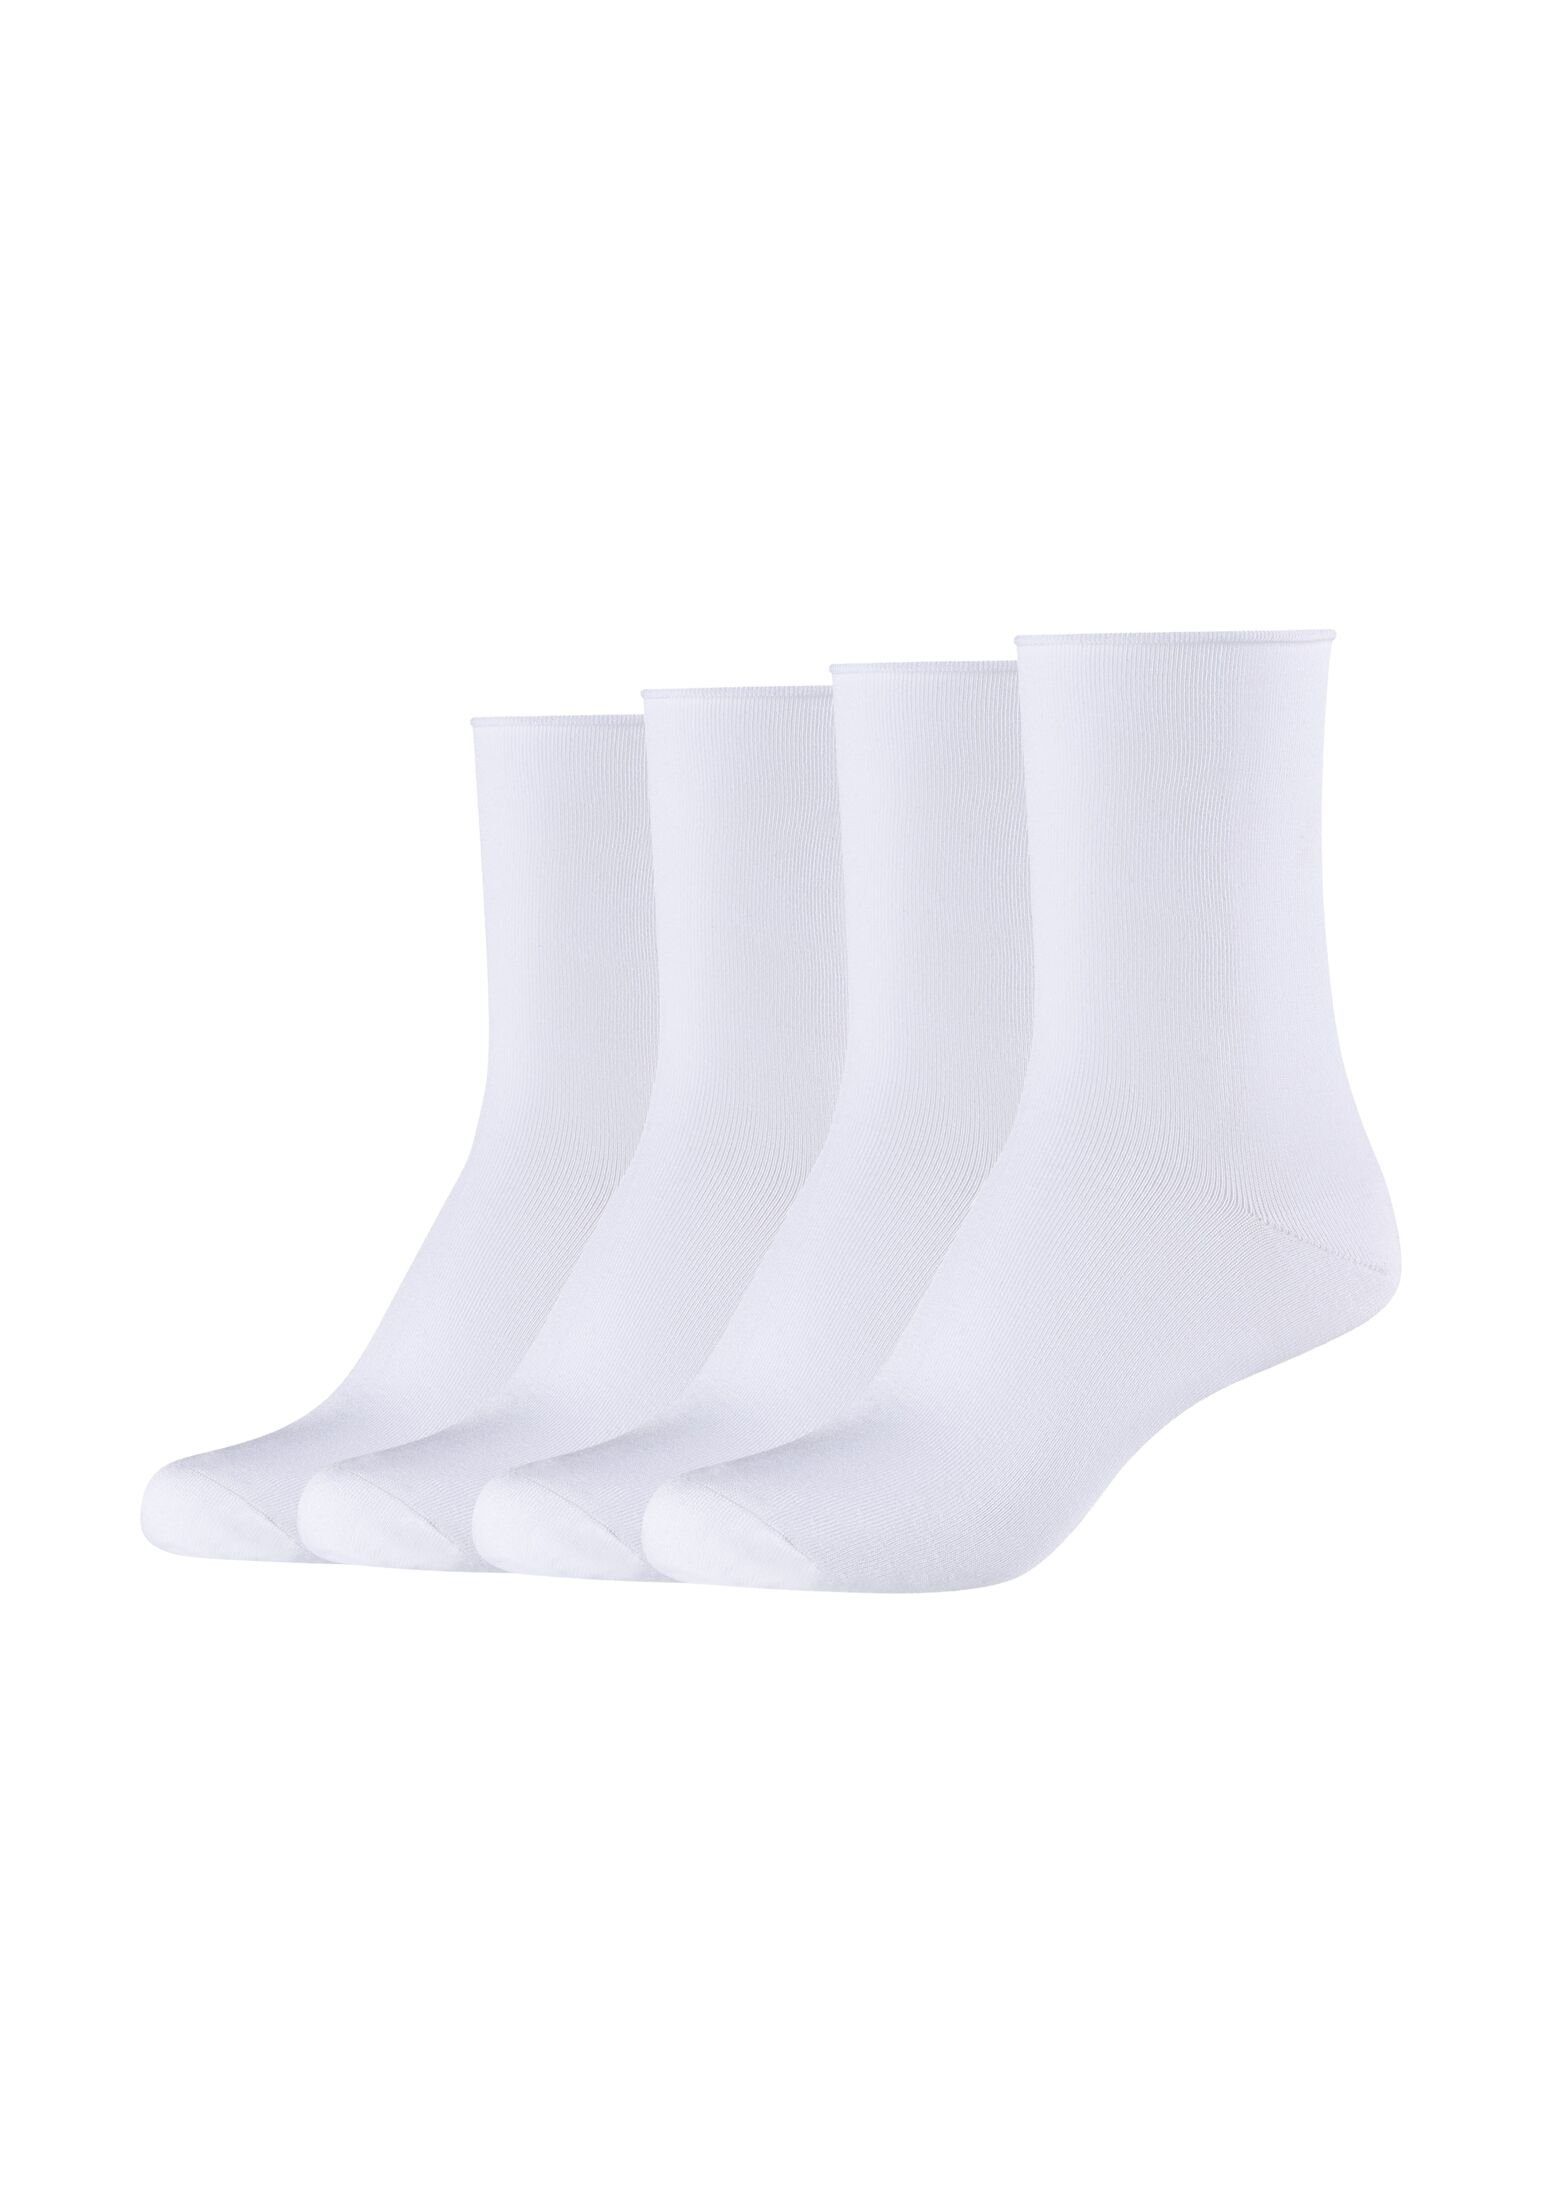 s.Oliver Socken Socken 4er Pack white